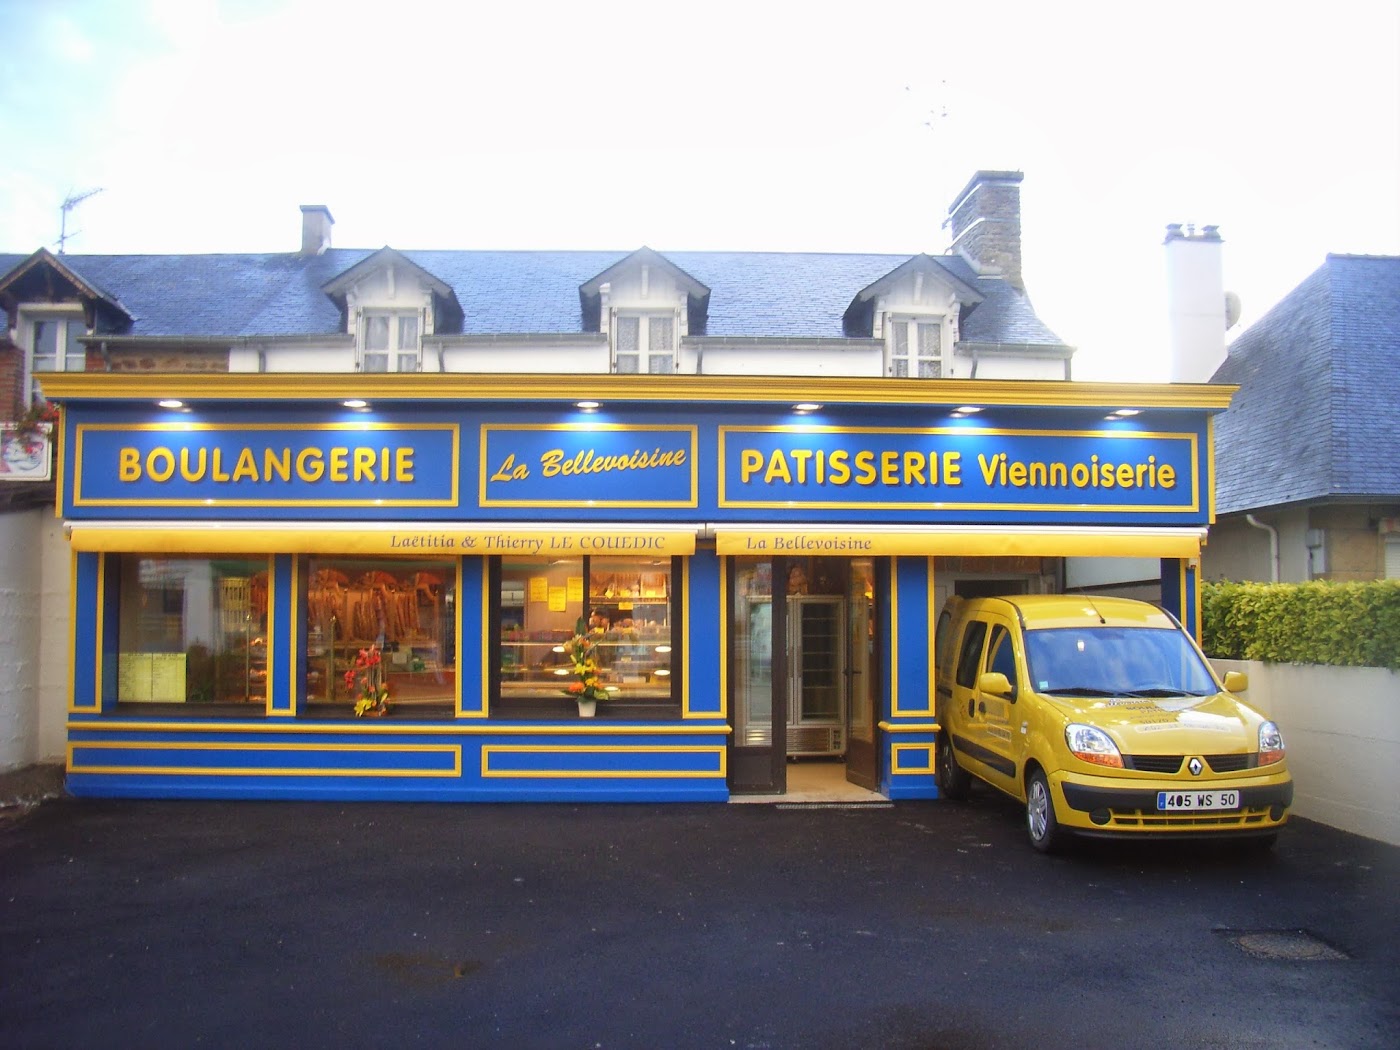 Boulangerie - Pâtisserie - Viennoiserie "Le Couëdic Thierry"